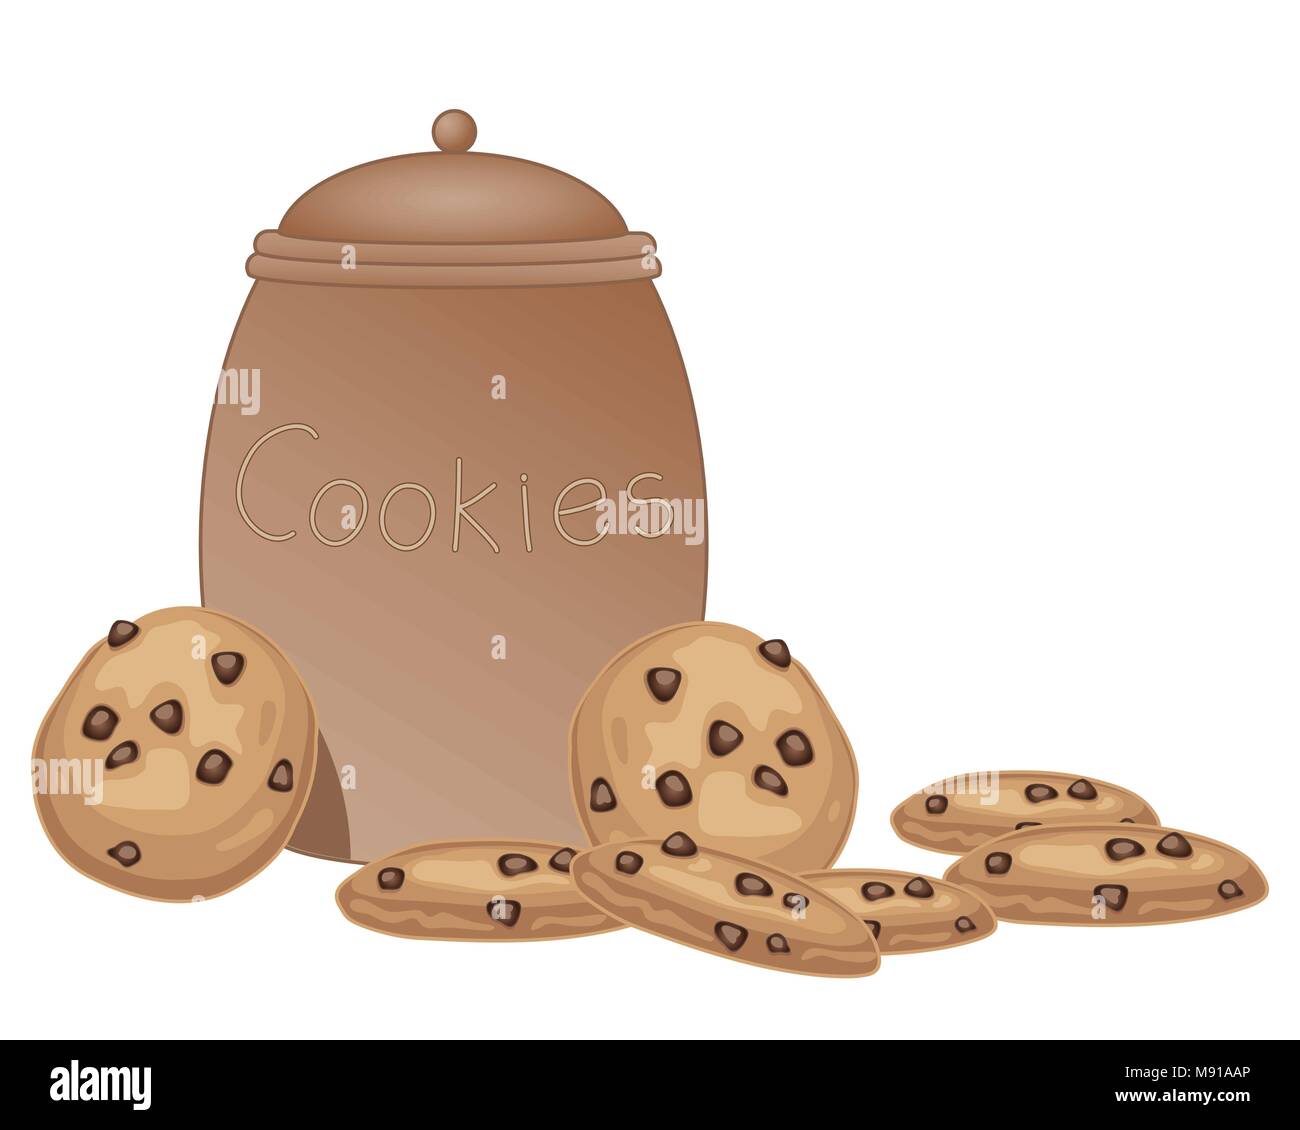 Un vecteur illustration en eps 10 format d'une jarre à biscuits brun avec des cookies aux pépites de chocolat sur un fond blanc Illustration de Vecteur